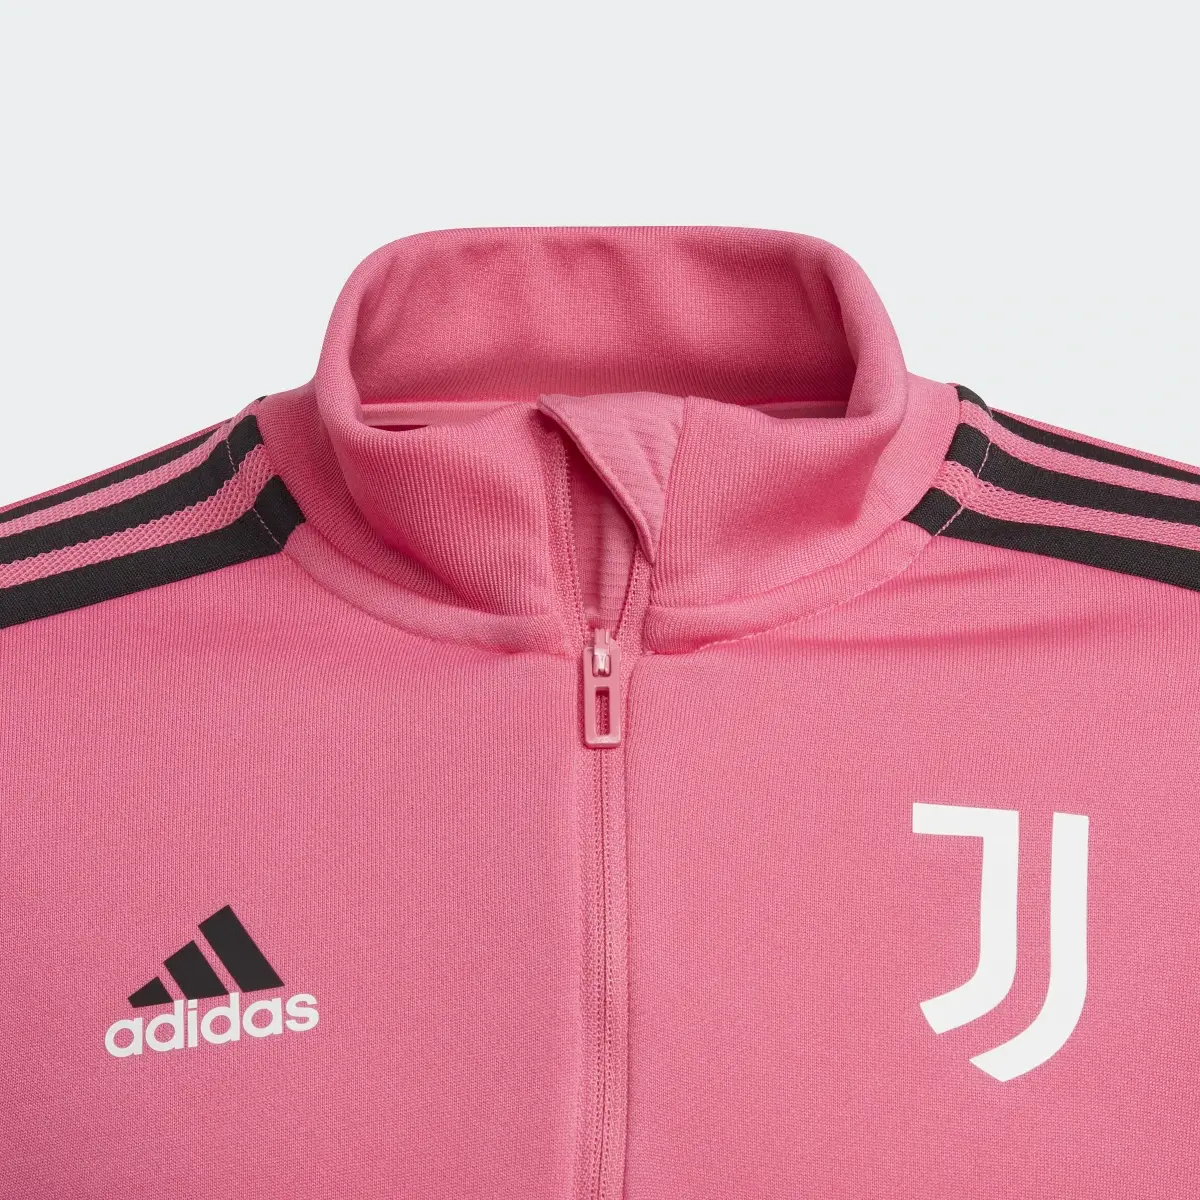 Adidas Juventus Condivo 22 Training Top. 3